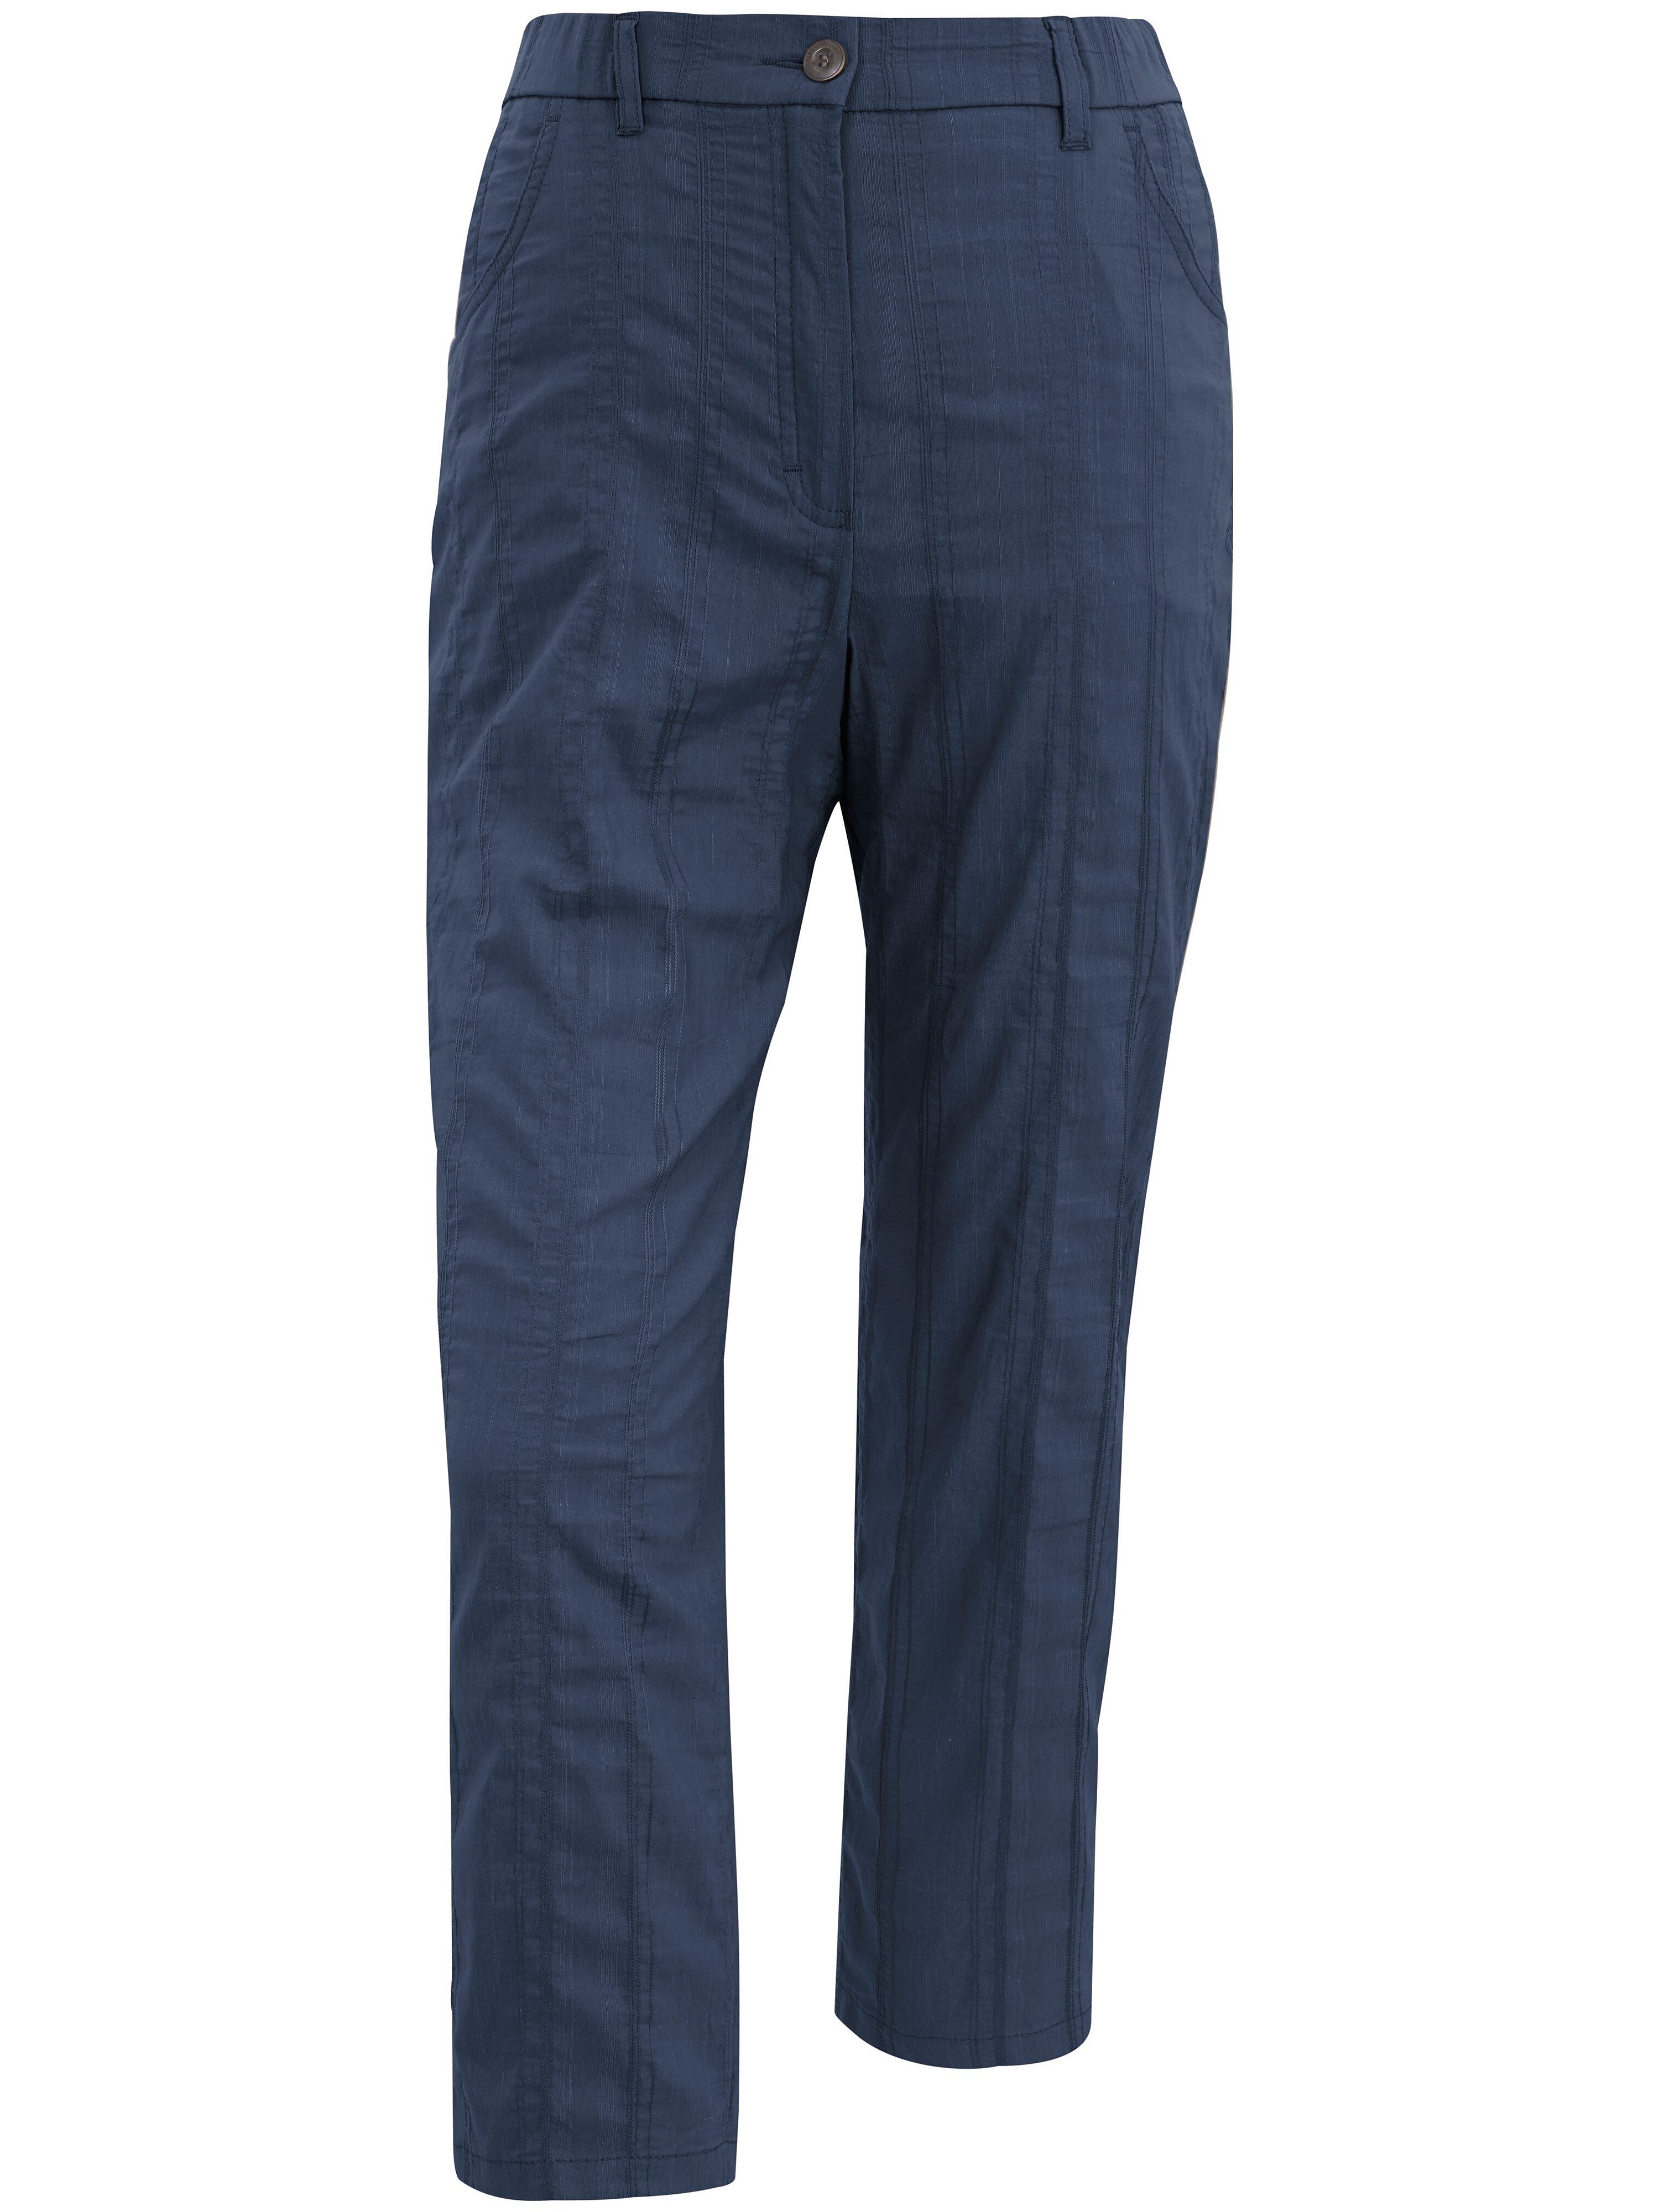 Le pantalon 7/8  KjBrand bleu taille 54